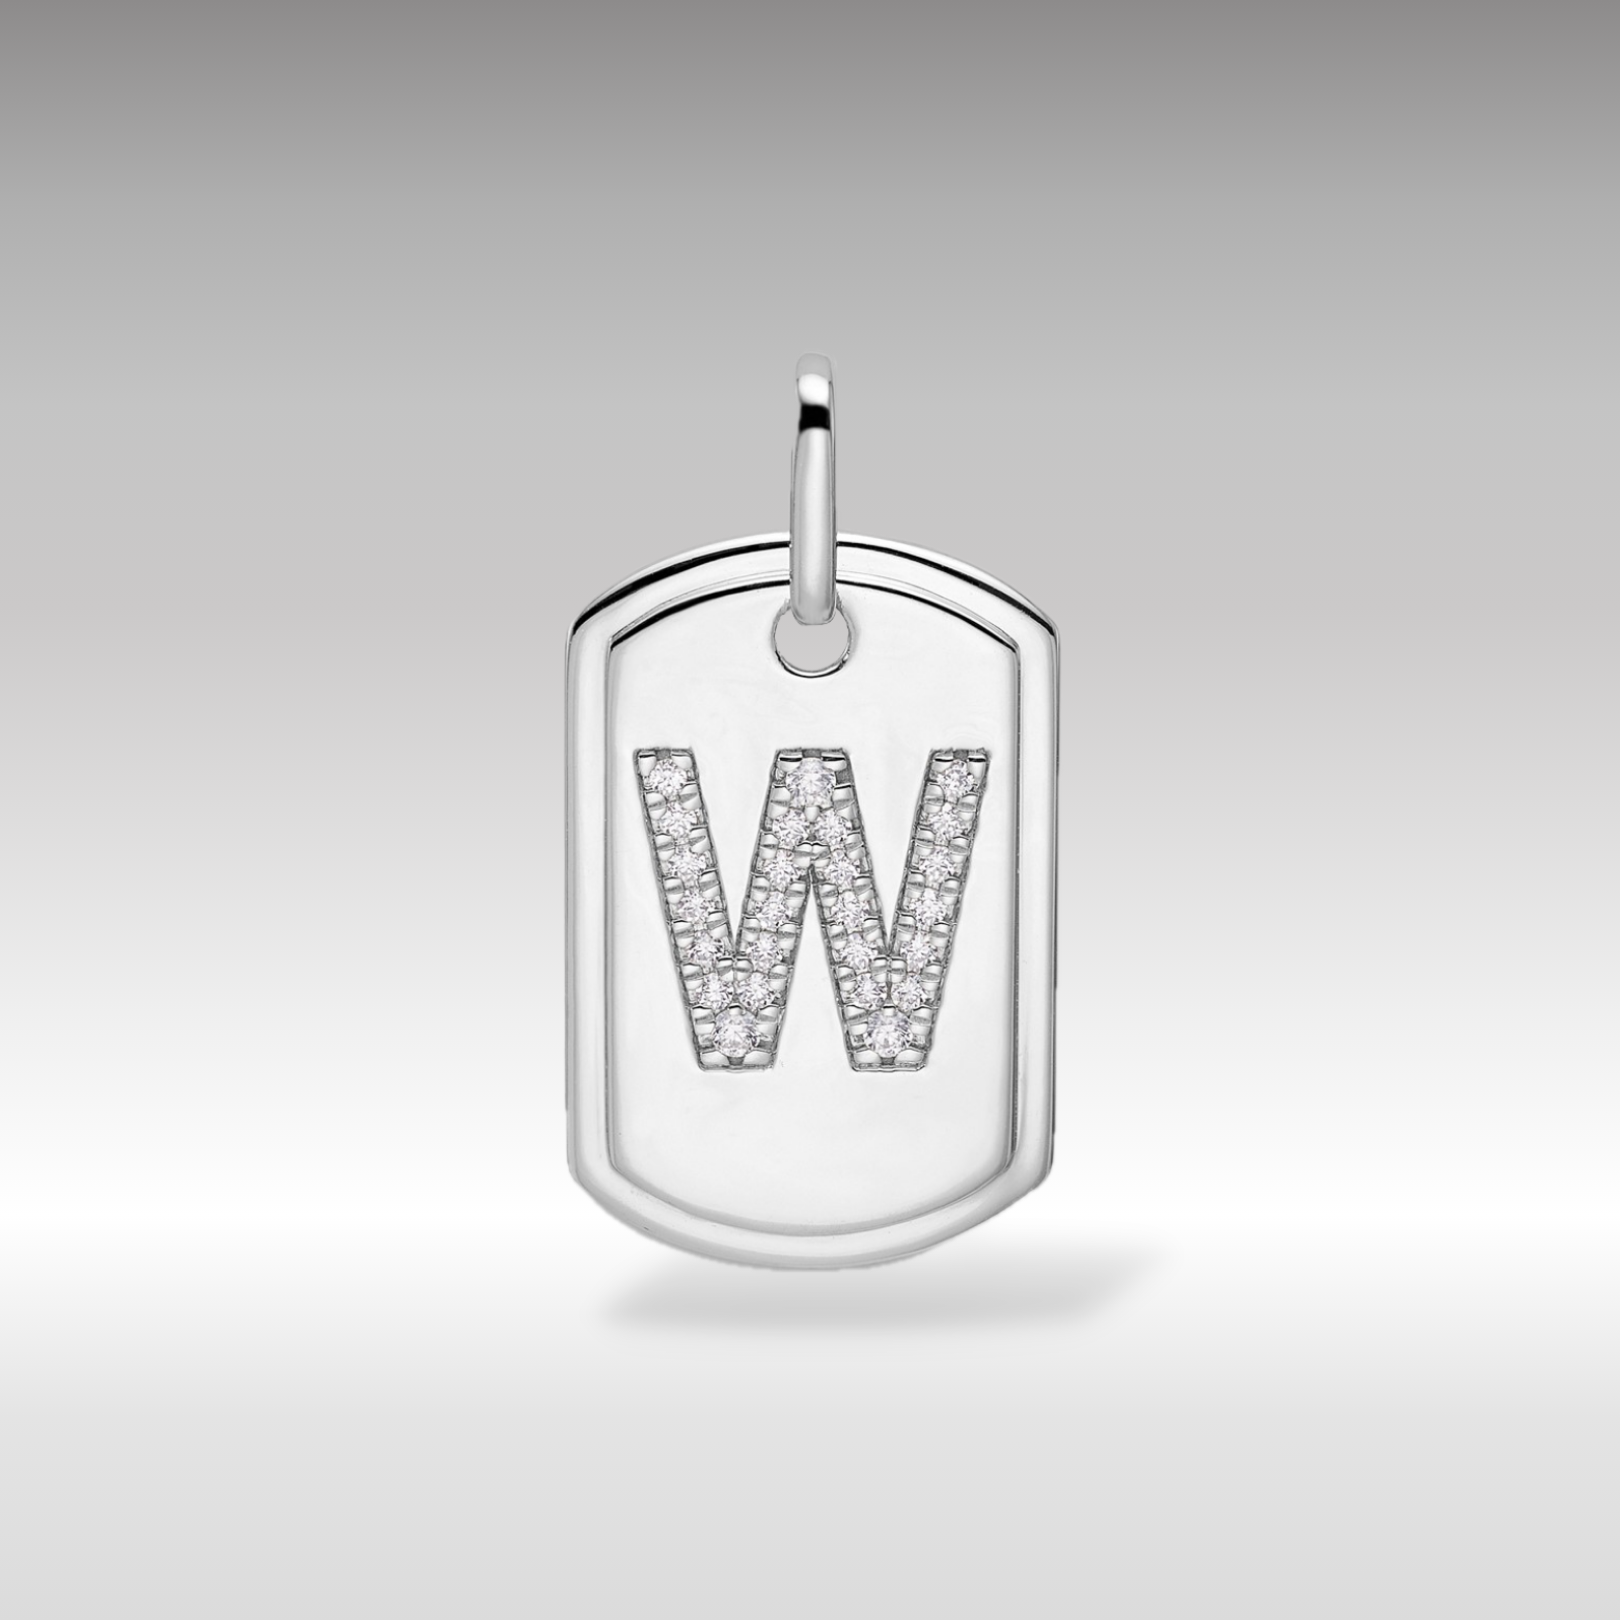 14K White Gold Initial "W" Dog Tag With Genuine Diamonds - Charlie & Co. Jewelry